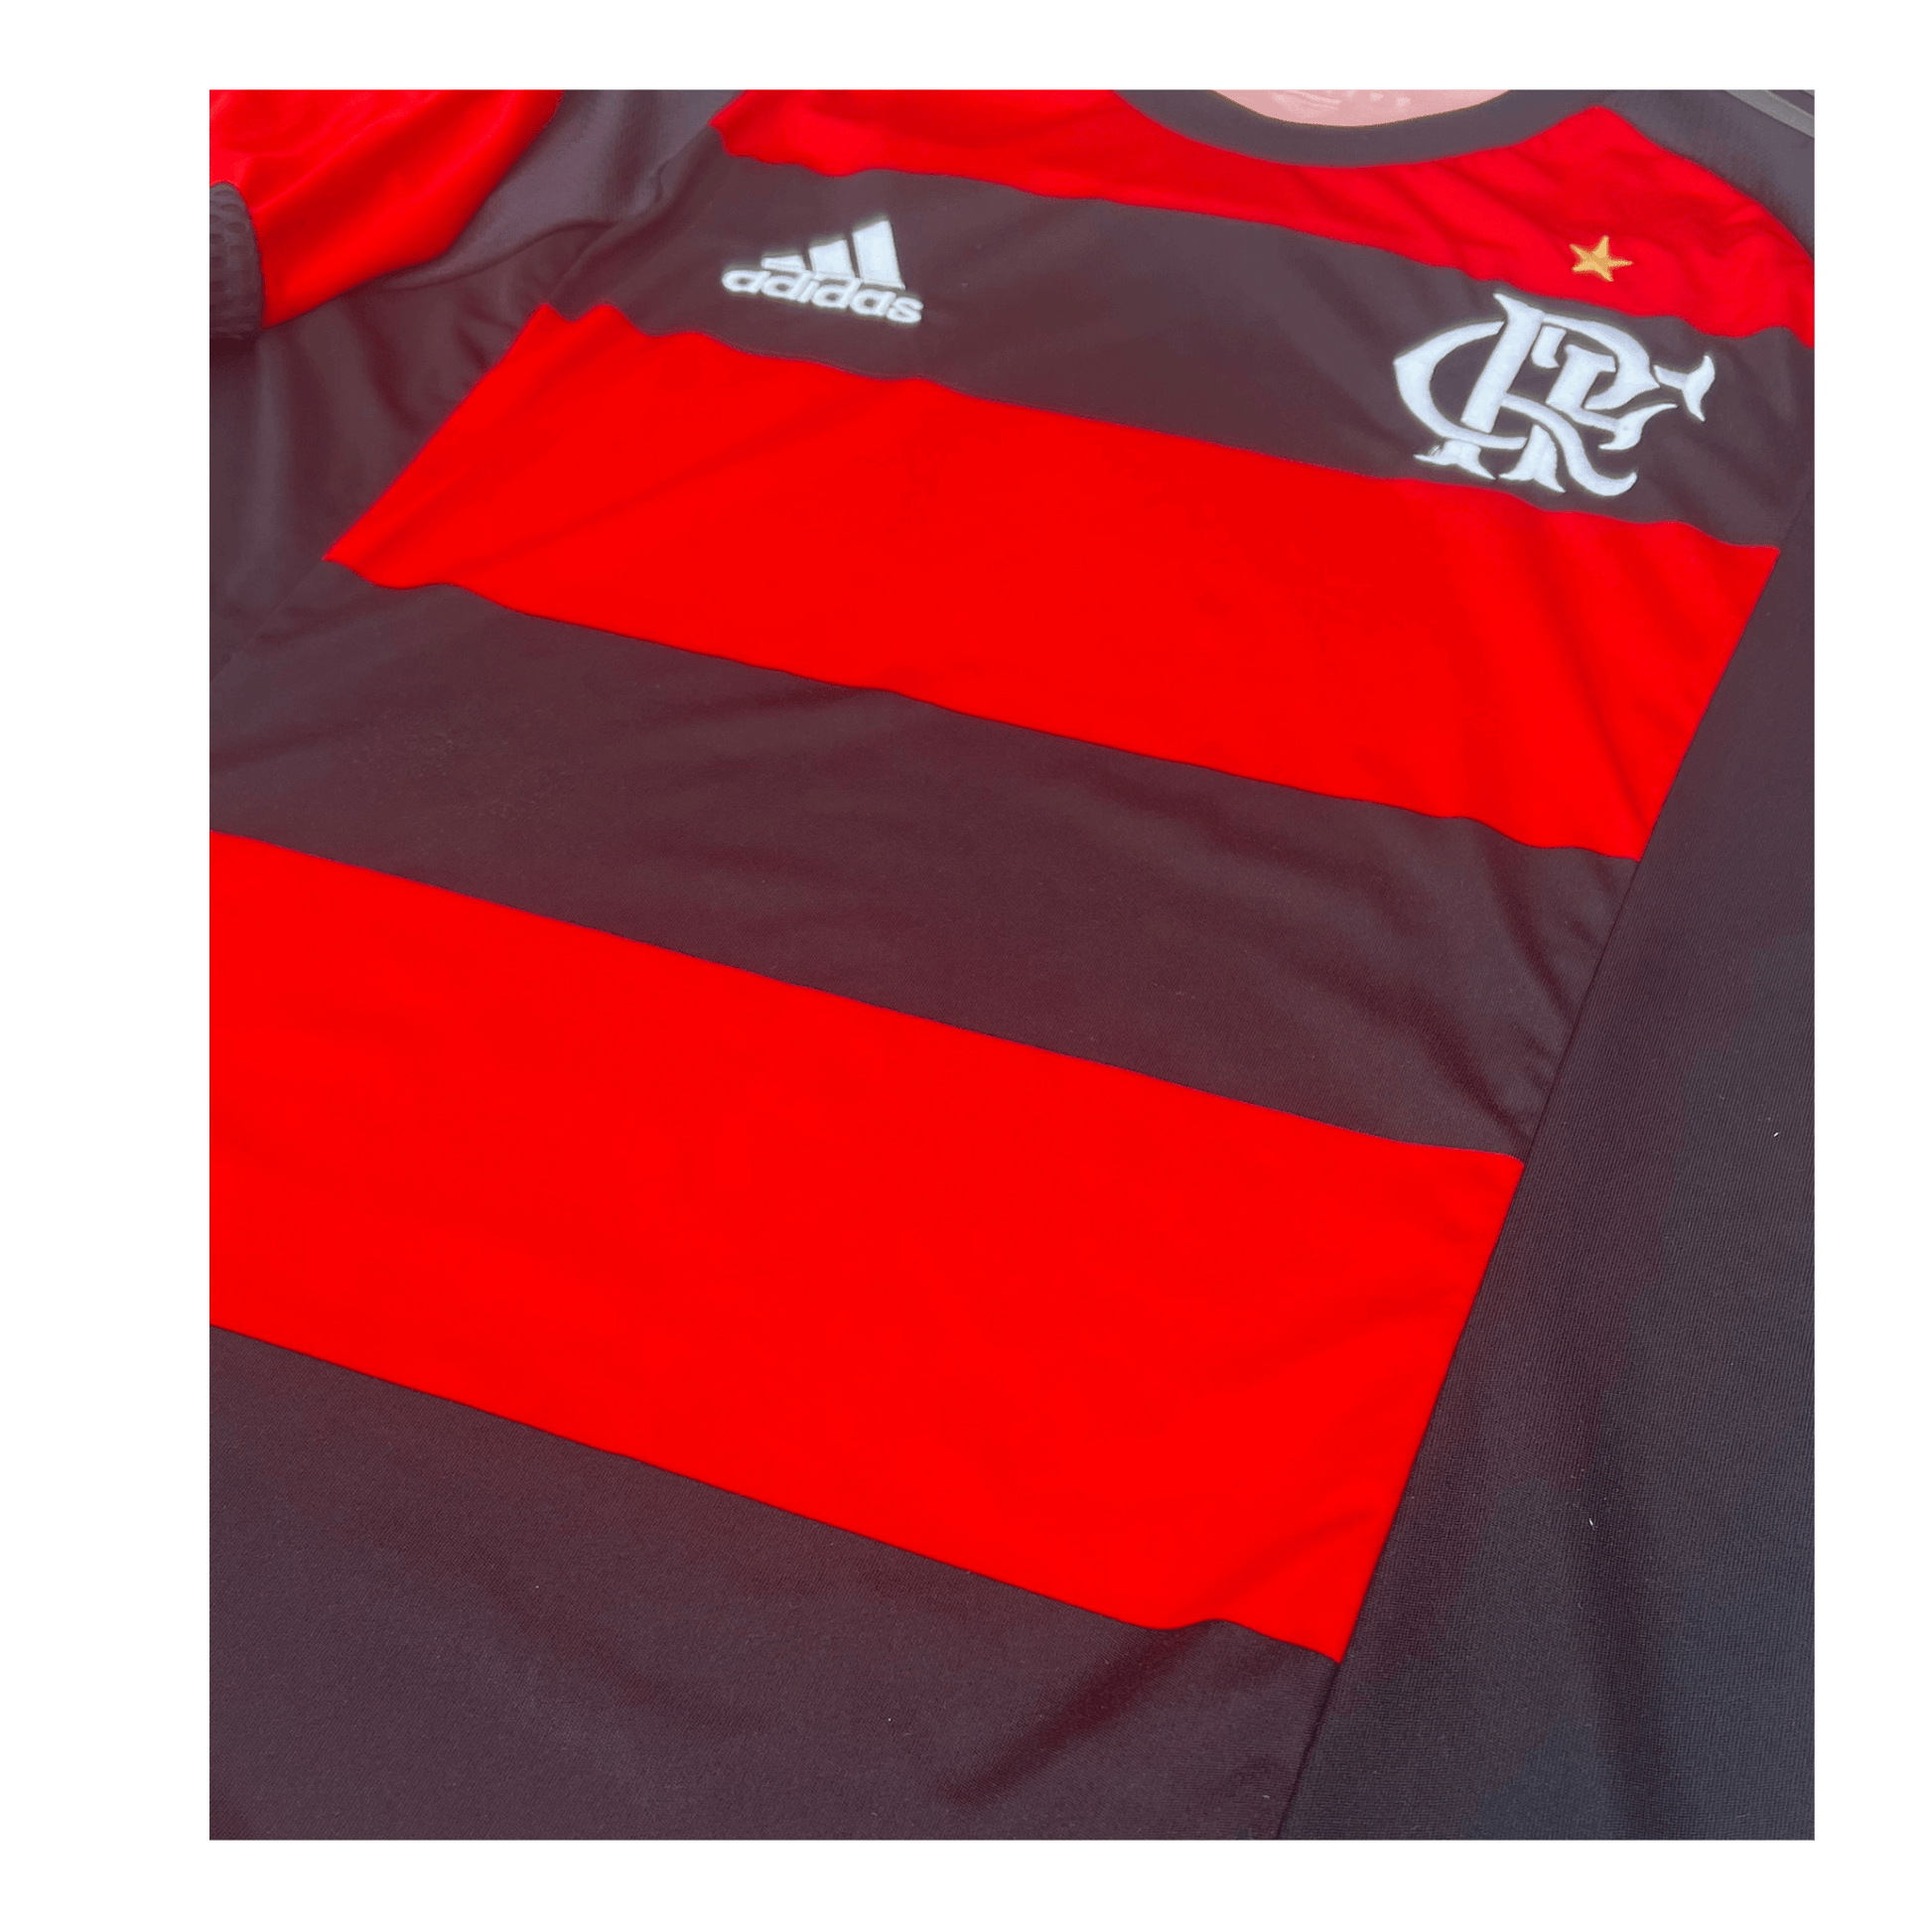 Clube de Regatas do Flamengo 2015/16 Home Jersey Design